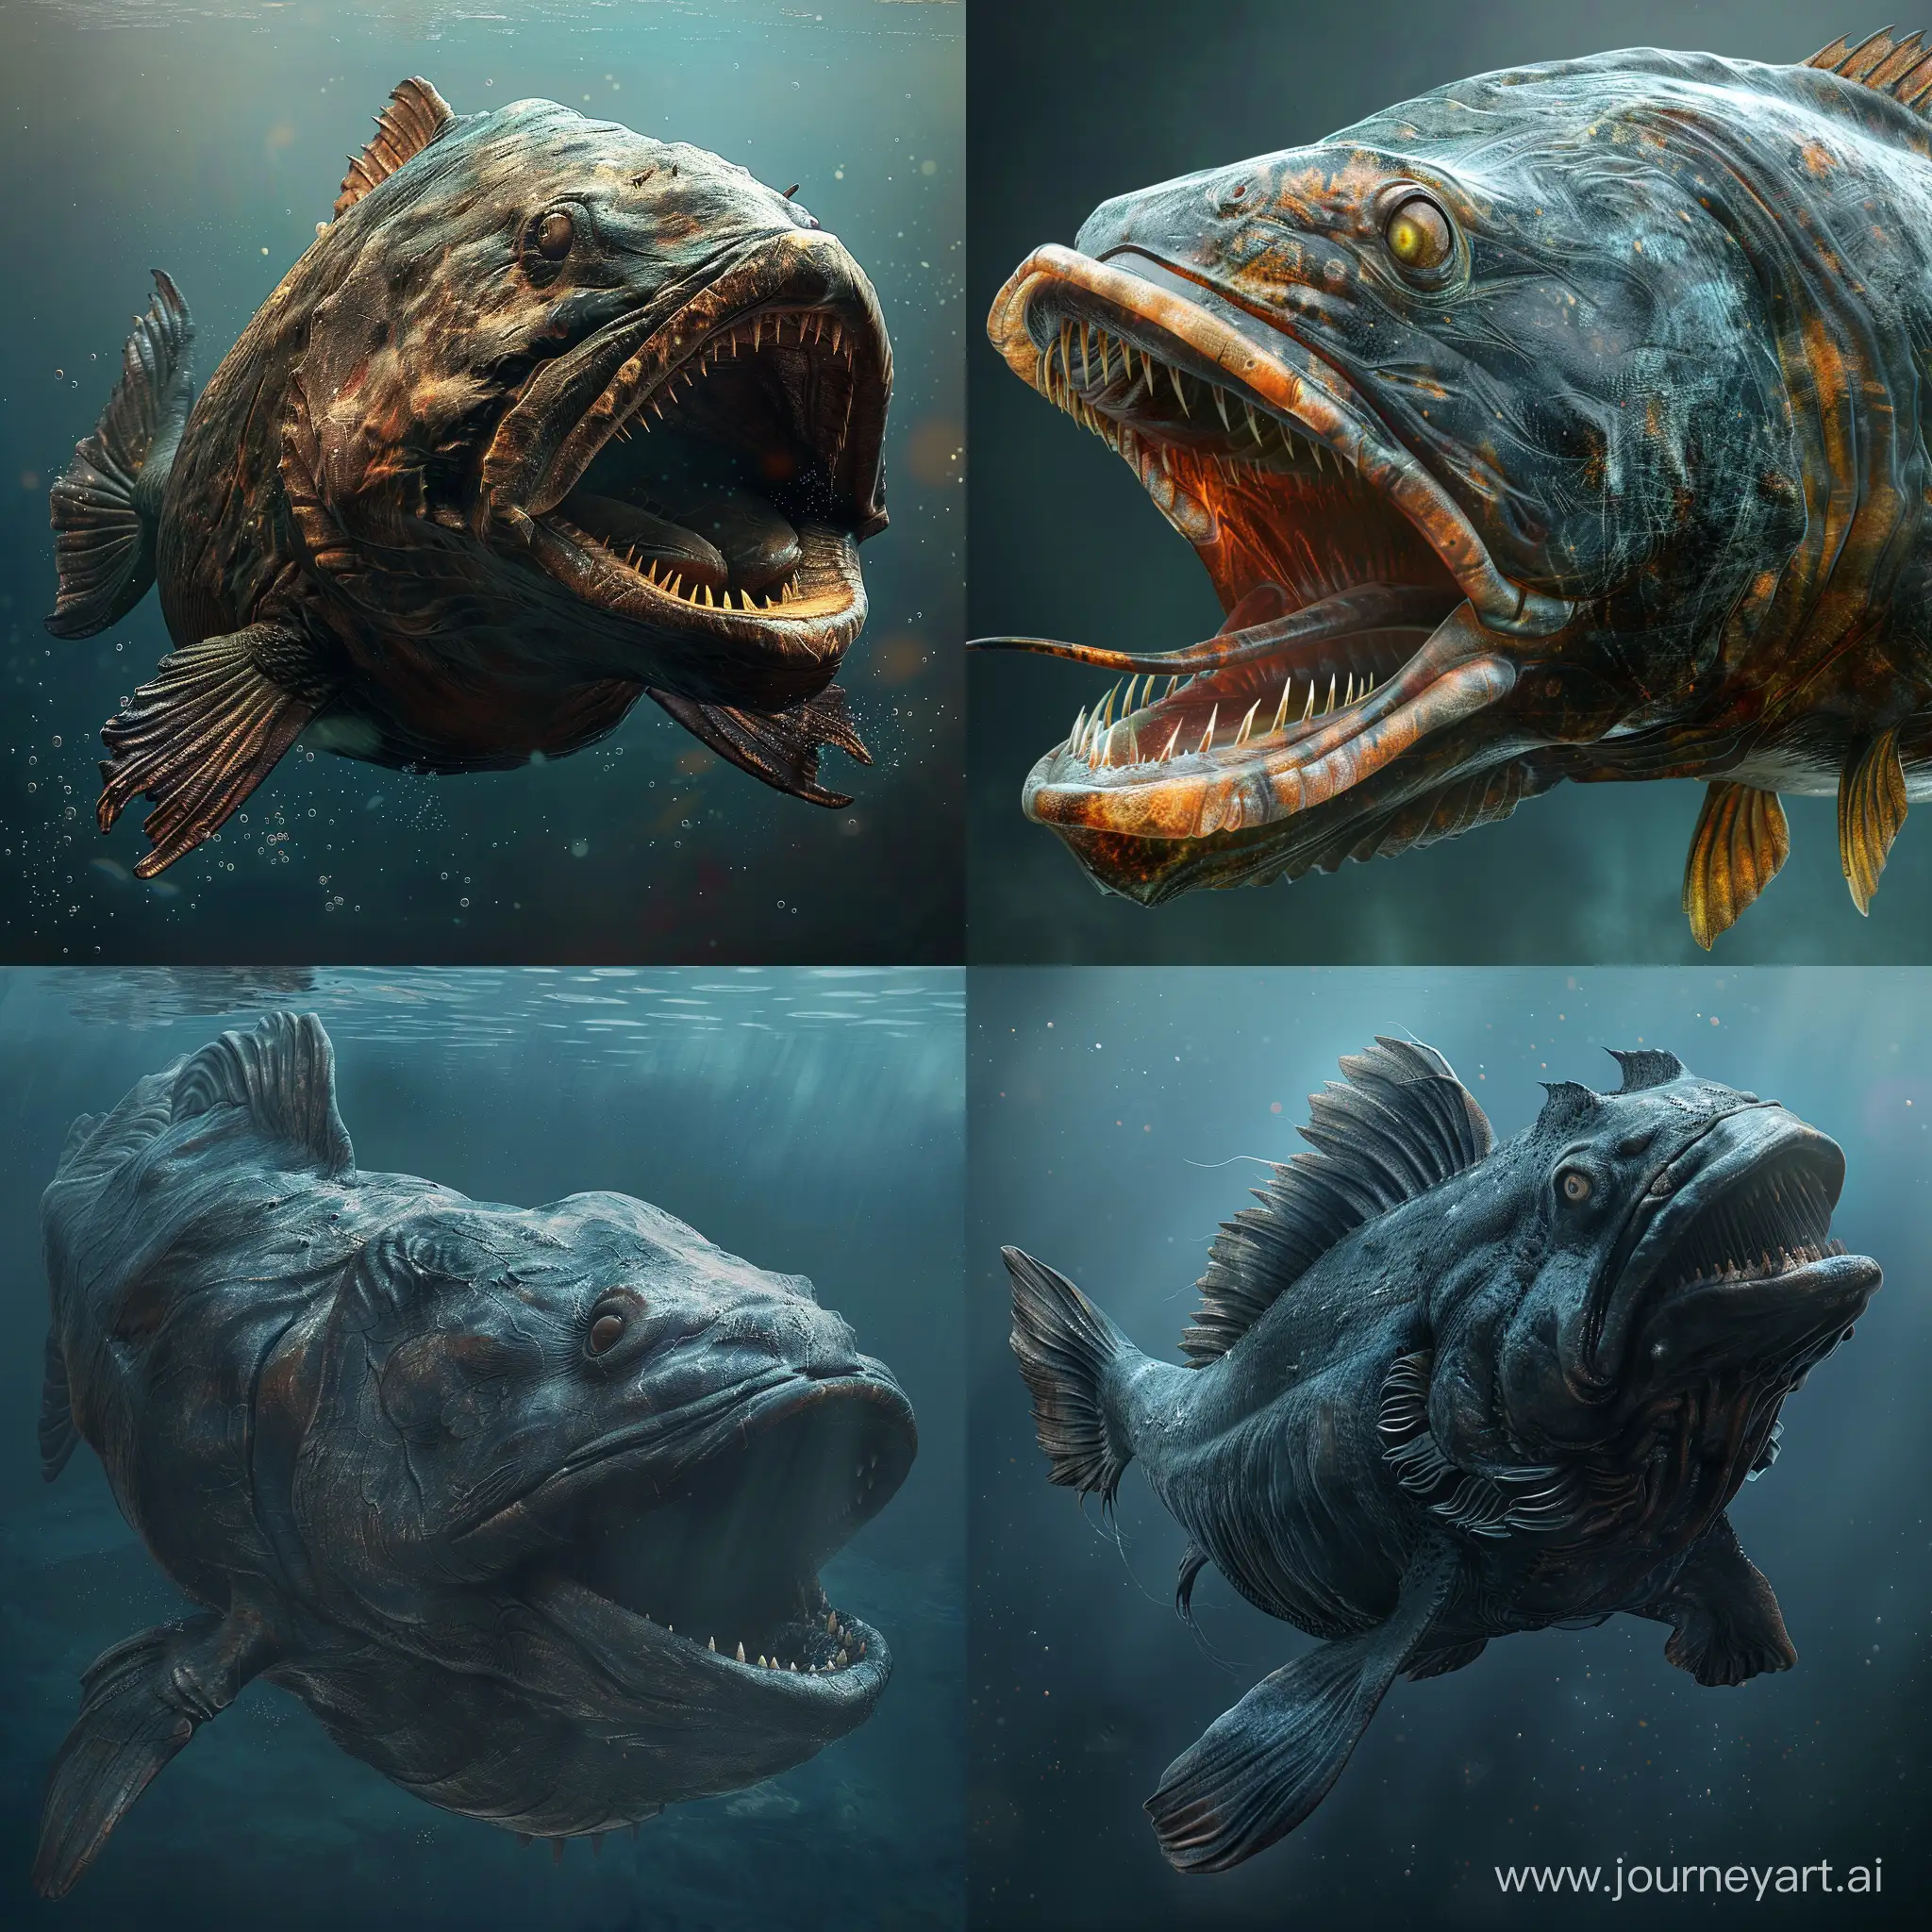 generame una imagen hiperrealista, fotorrealista, cinematográfica del pez mítico que describe la biblia en el viejo testamento llamado Leviathan